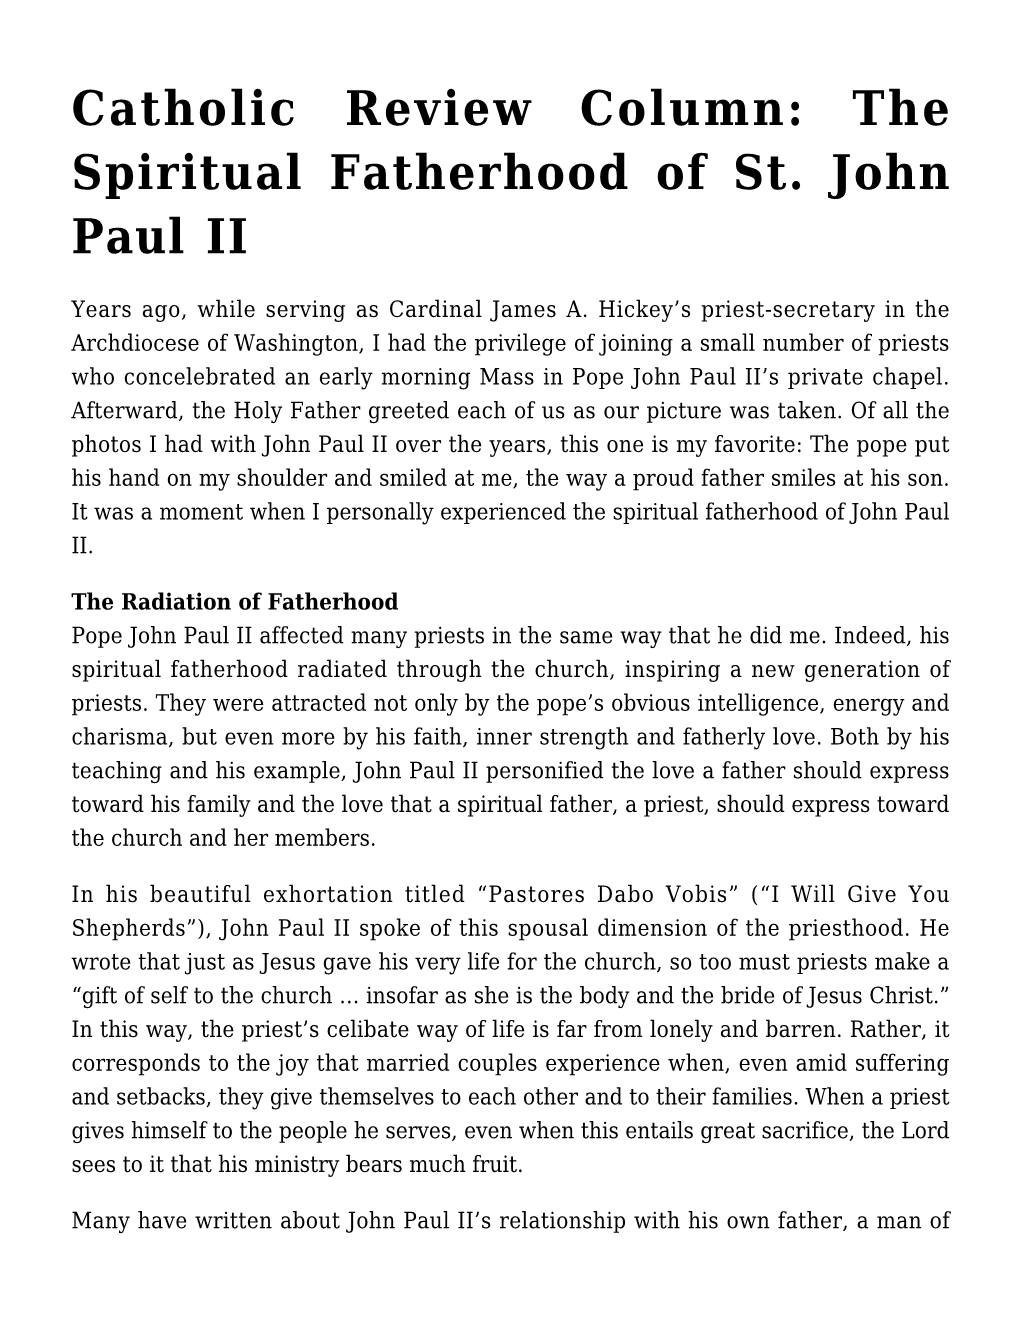 The Spiritual Fatherhood of St. John Paul II